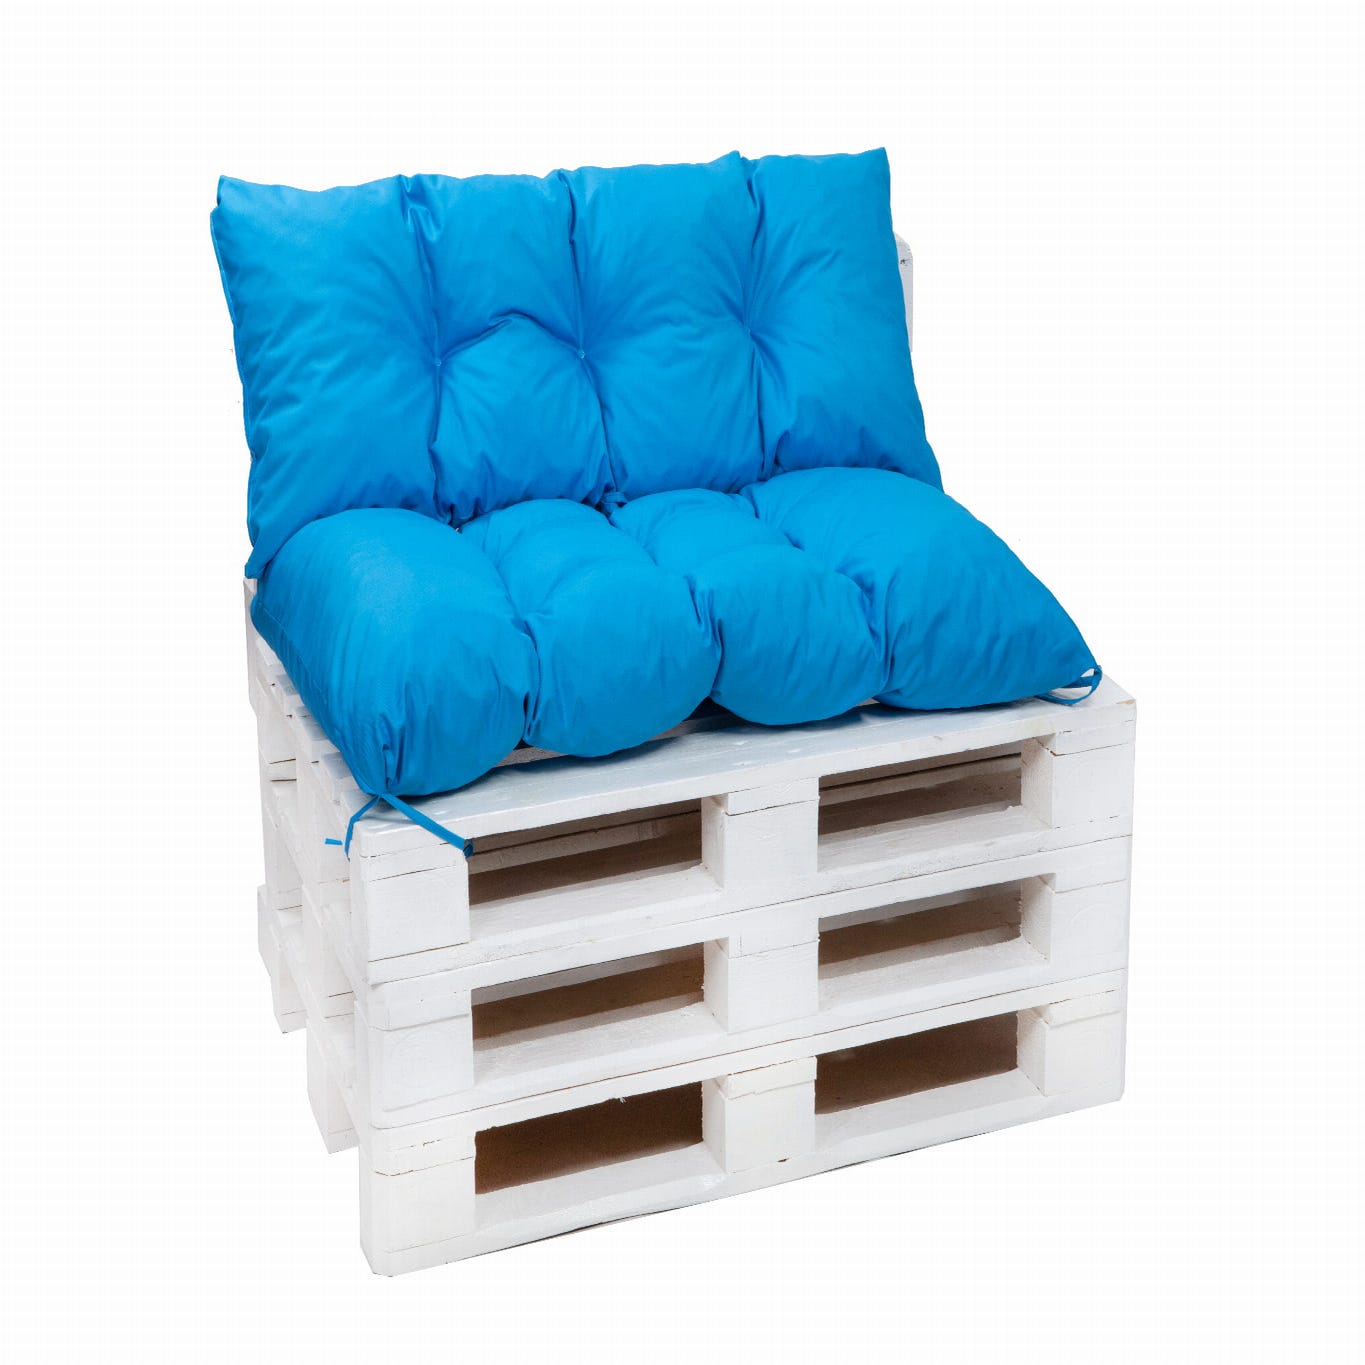 Set cuscini per pallet 120x60 Seduta e 120x40cm Schienale Blu, cuscini  divano / cuscino pallet interno / esterno, SETGARDEN